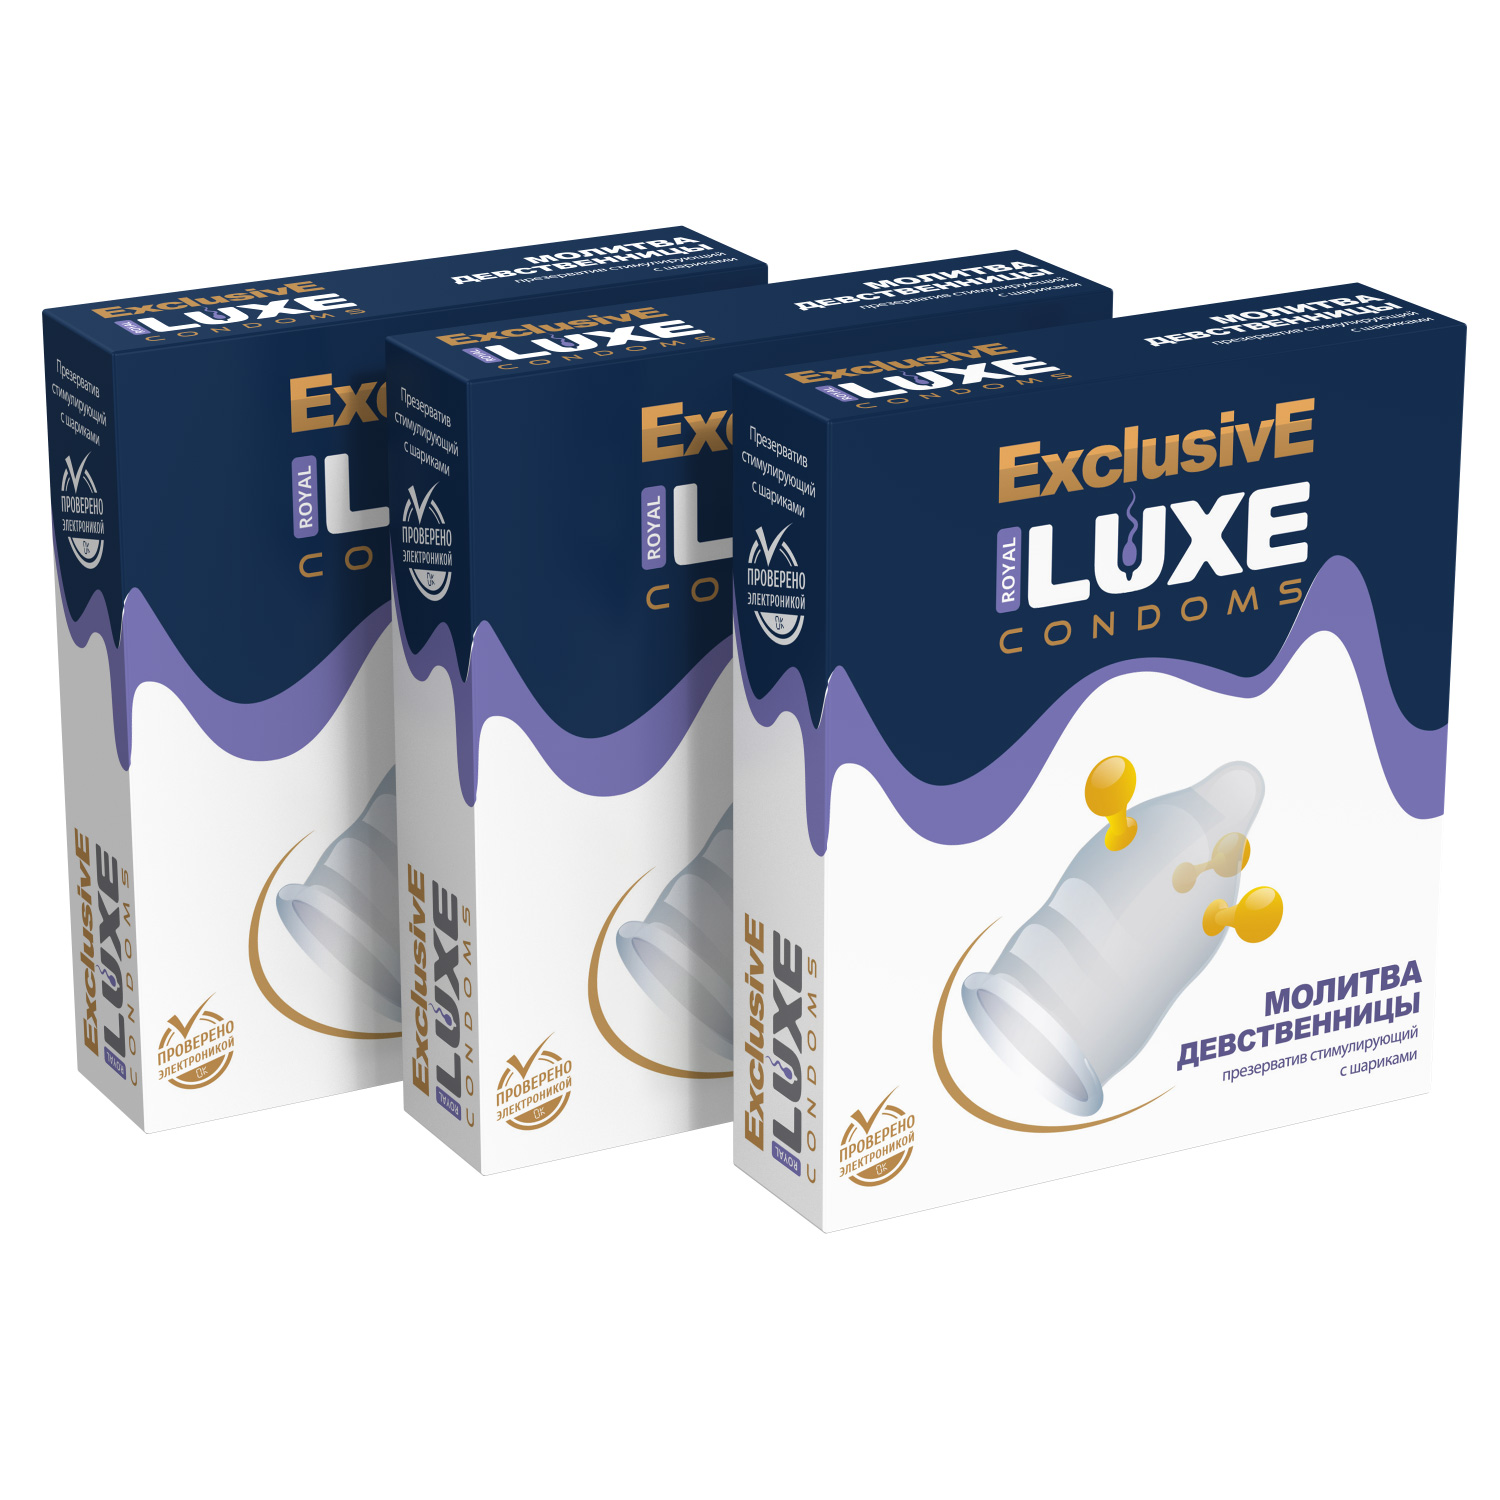 Презервативы Luxe Эксклюзив Молитва девственницы комплект из 3 упаковок